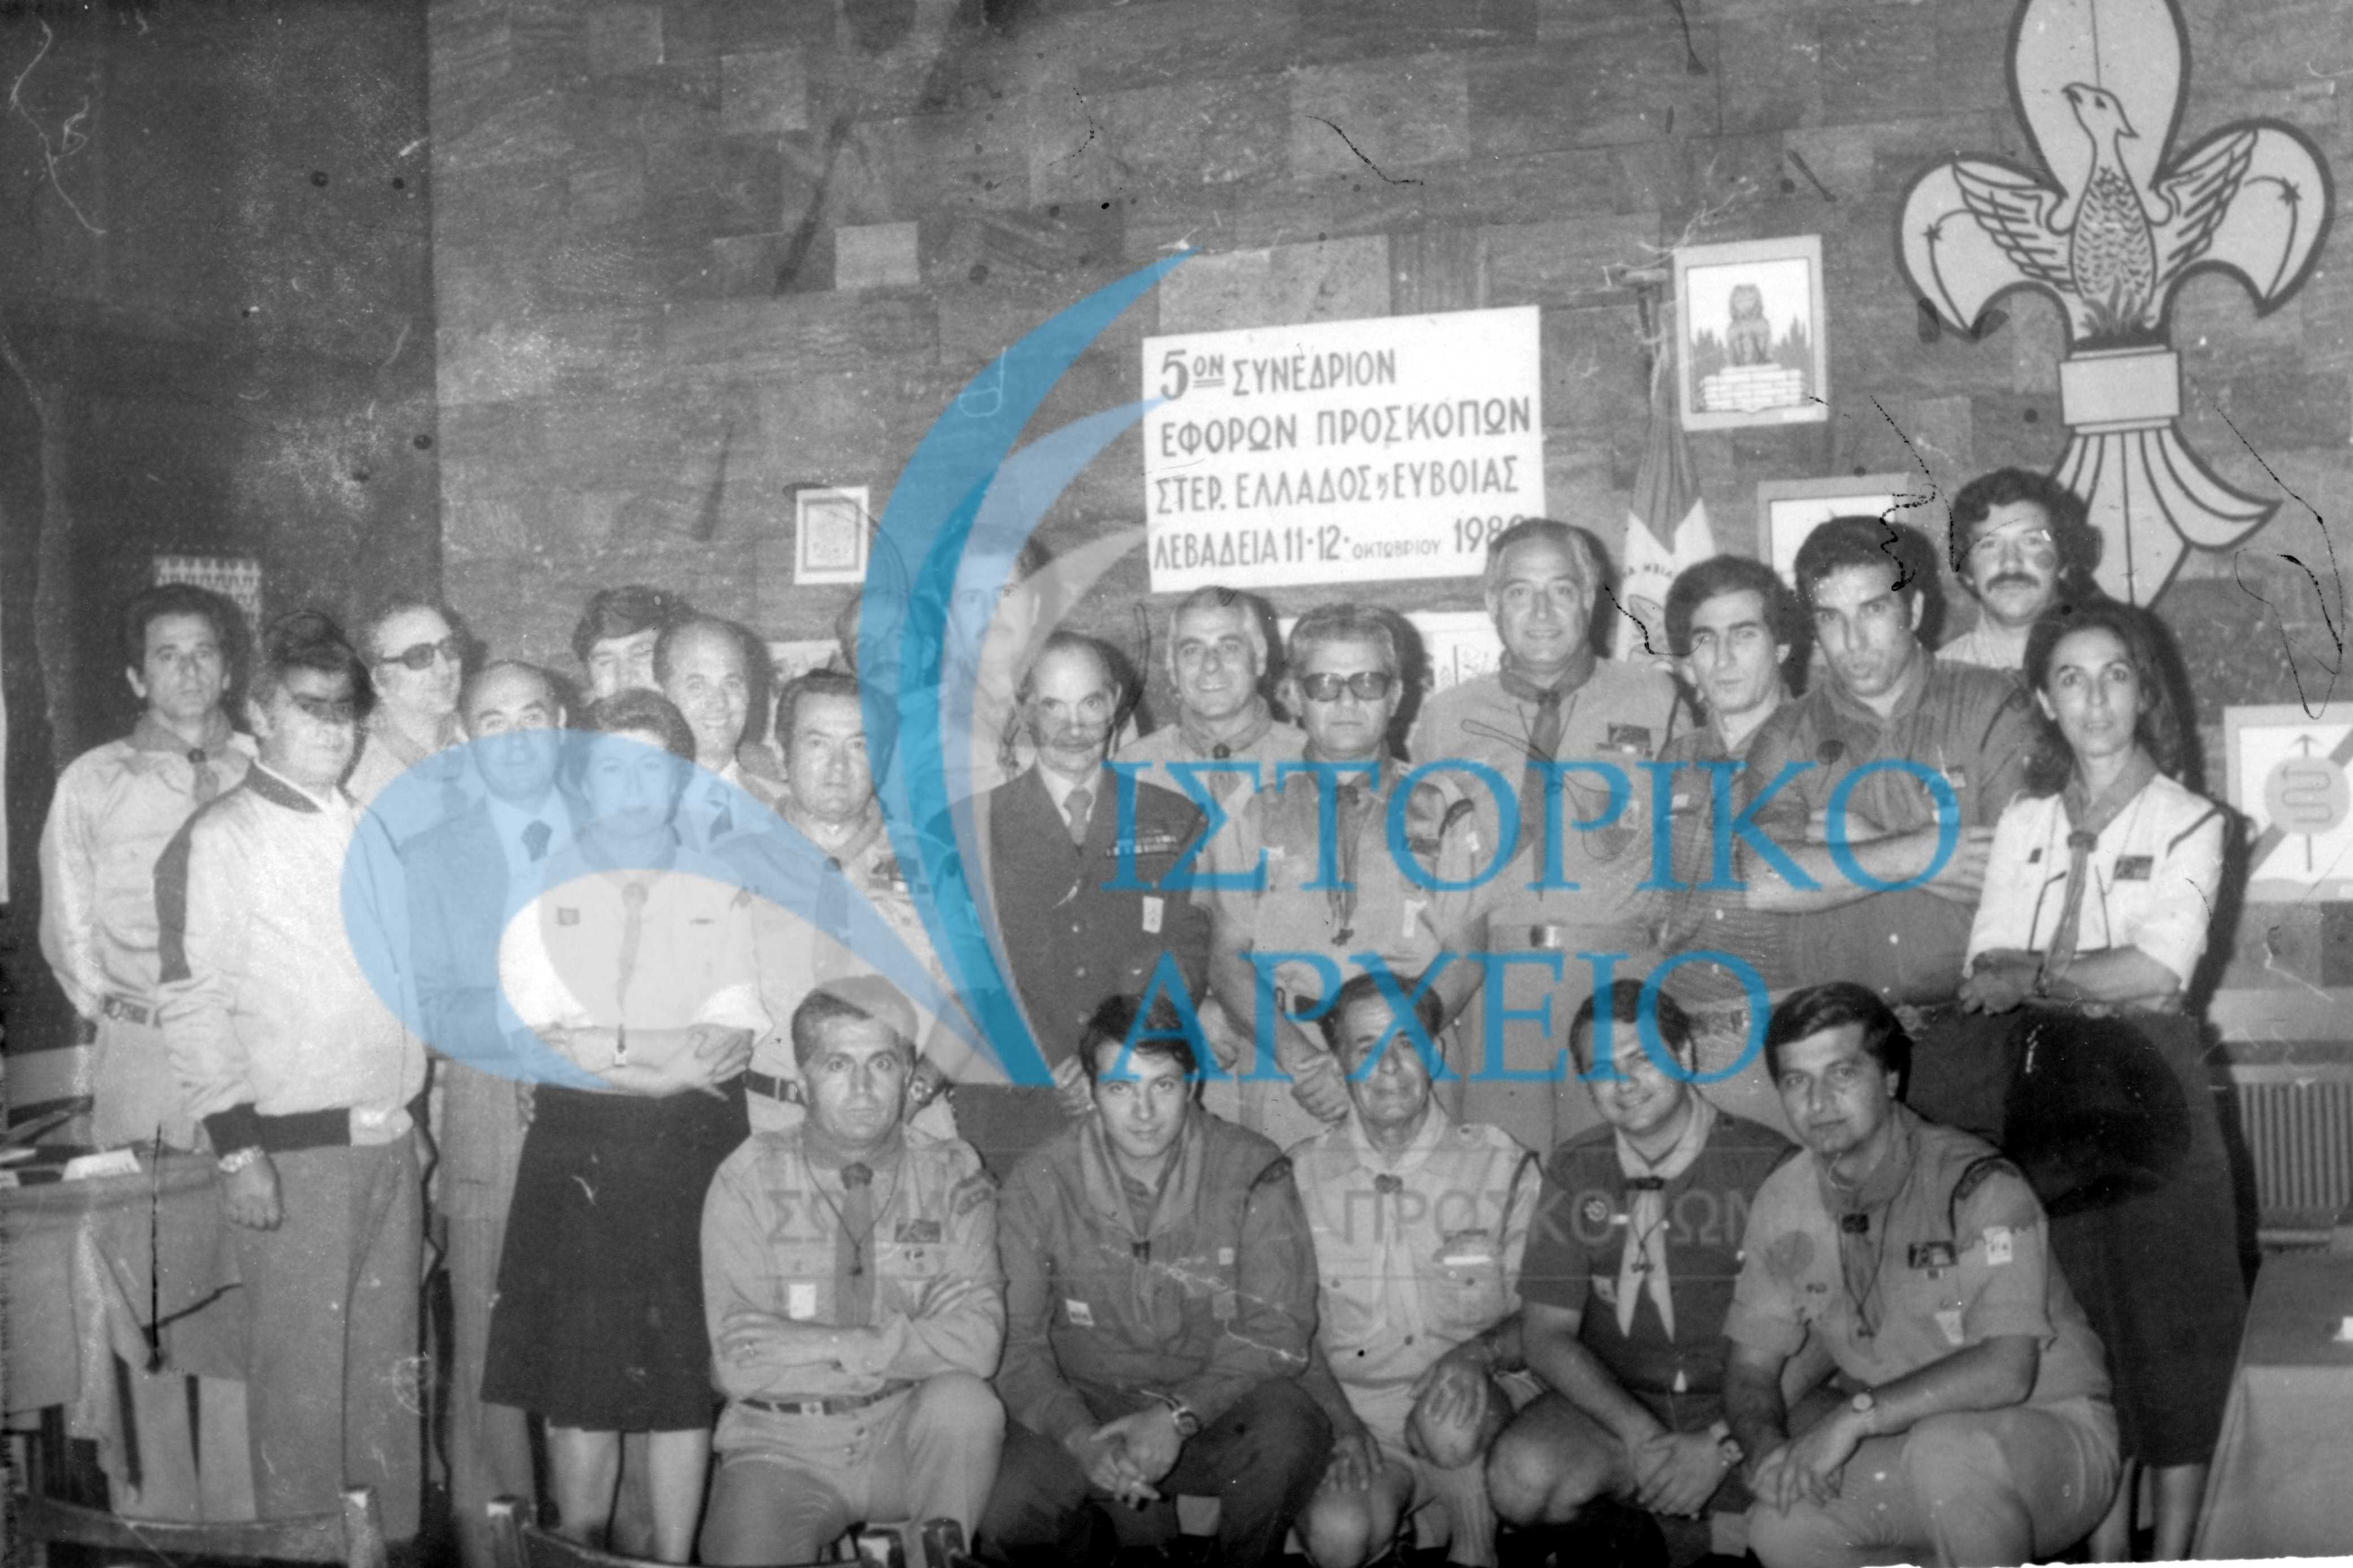 Οι συμμετέχοντες στο 5ο Συνέδριο Εφόρων Προσκόπων Στερεάς Ελλάδας & Εύβοιας στη Λιβαδειά το 1980.